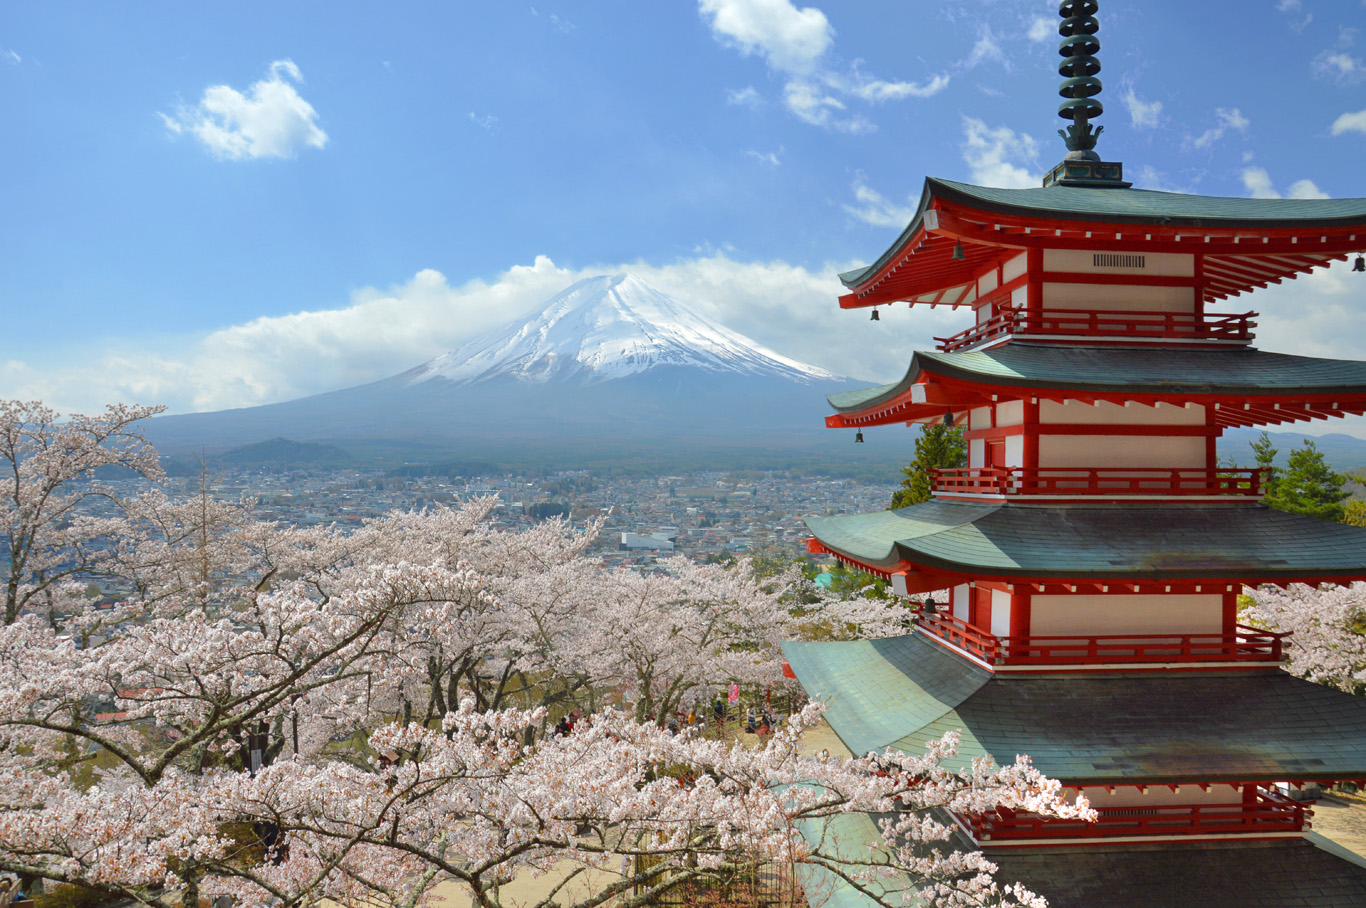   Chureito Pagoda - best for cherry blossom     more info   